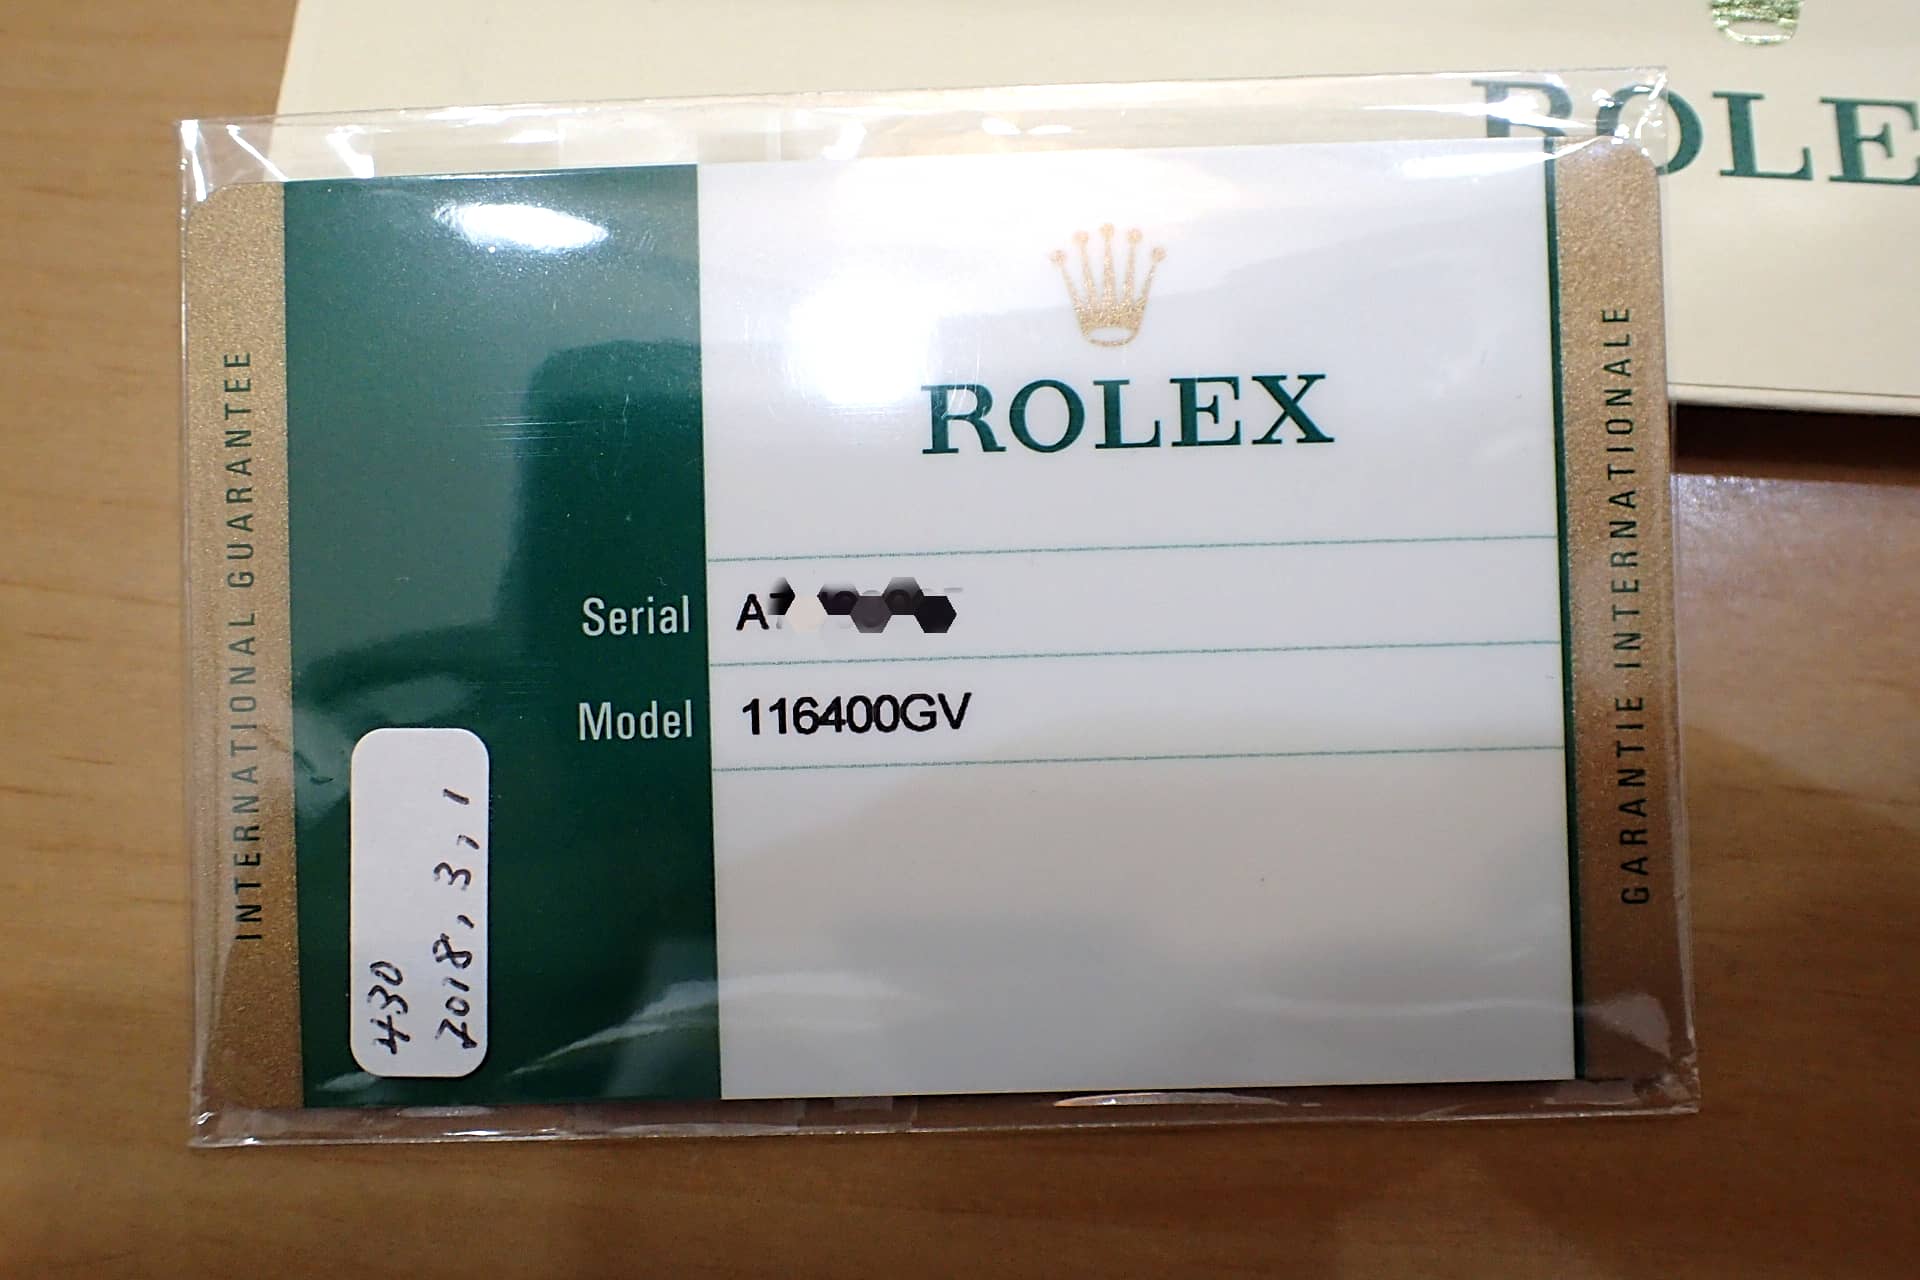 ROLEX ロレックス ミルガウス Ref.116400GV Zブルー